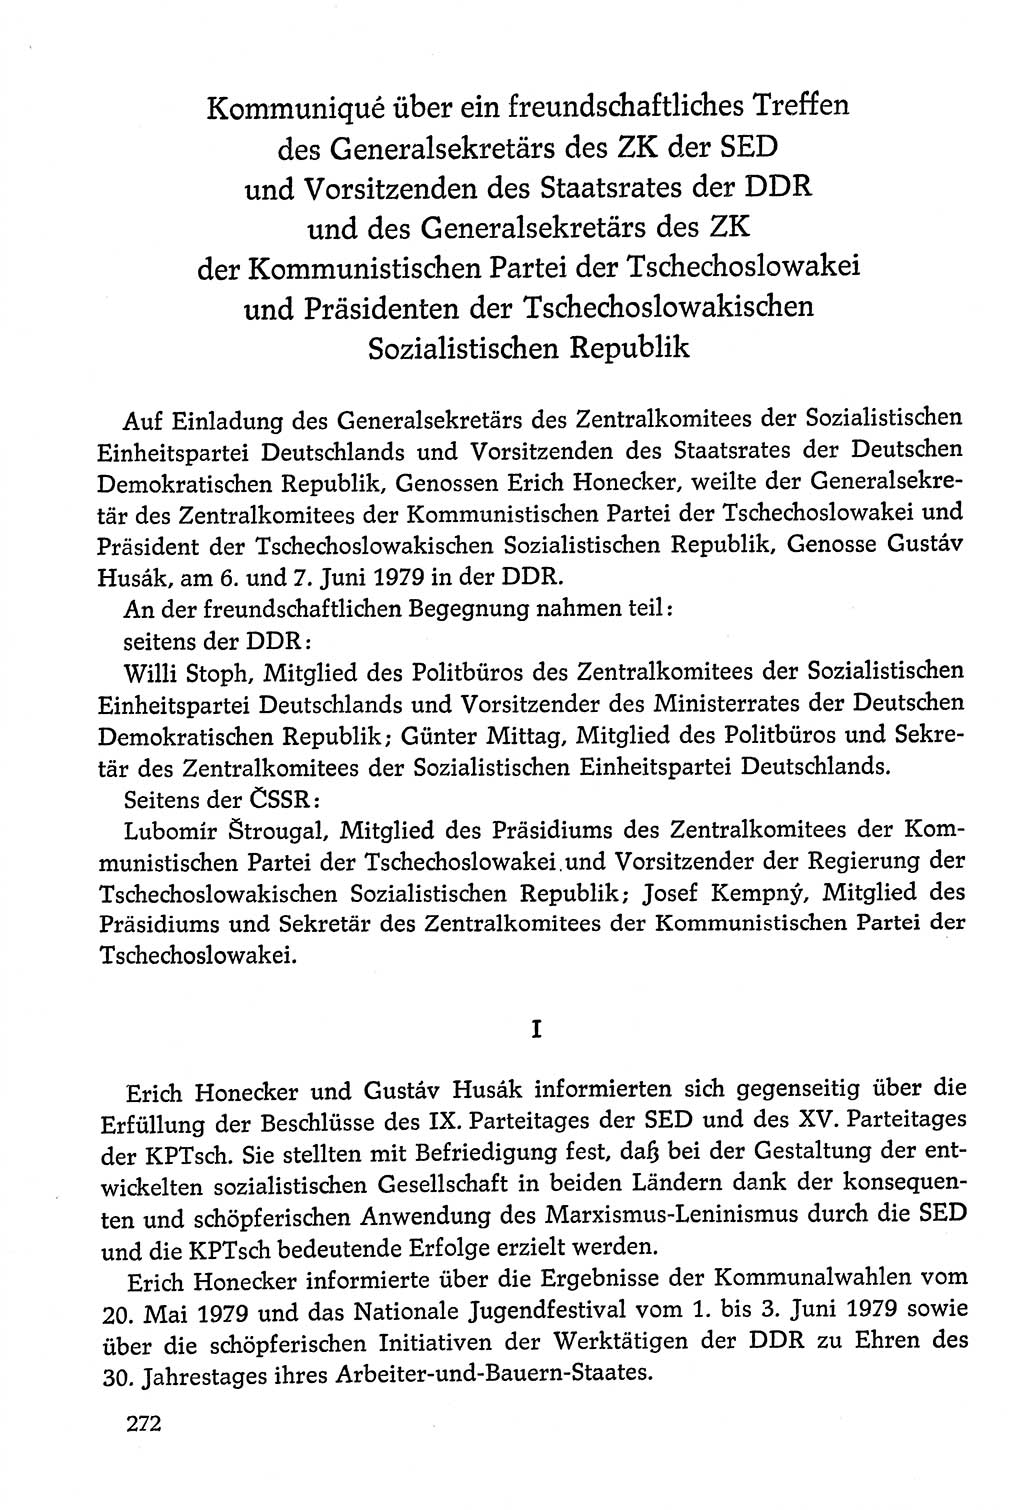 Dokumente der Sozialistischen Einheitspartei Deutschlands (SED) [Deutsche Demokratische Republik (DDR)] 1978-1979, Seite 272 (Dok. SED DDR 1978-1979, S. 272)